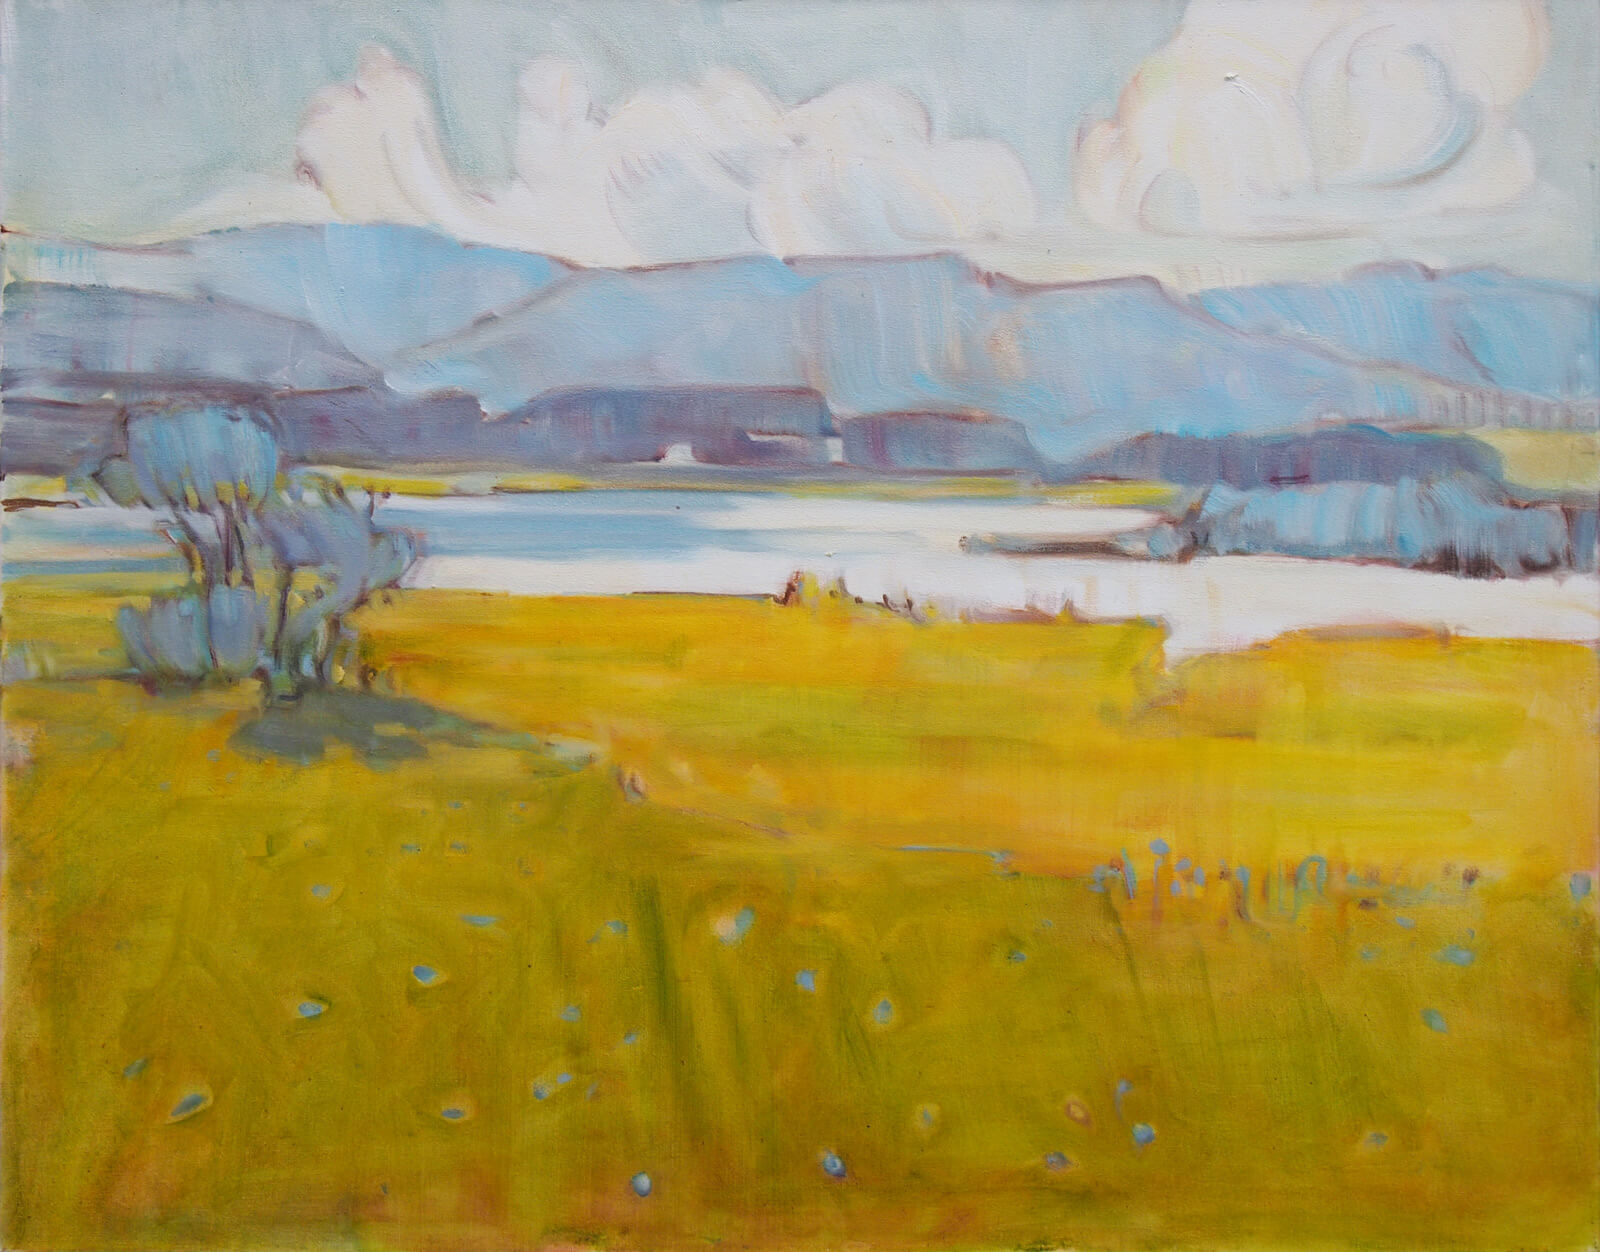 Landschaftsmalerei, en plein air, Freilichtmalerei, Murnauer Moos, Öl auf Leinwand, Tanja Leodolter, Künstlerin